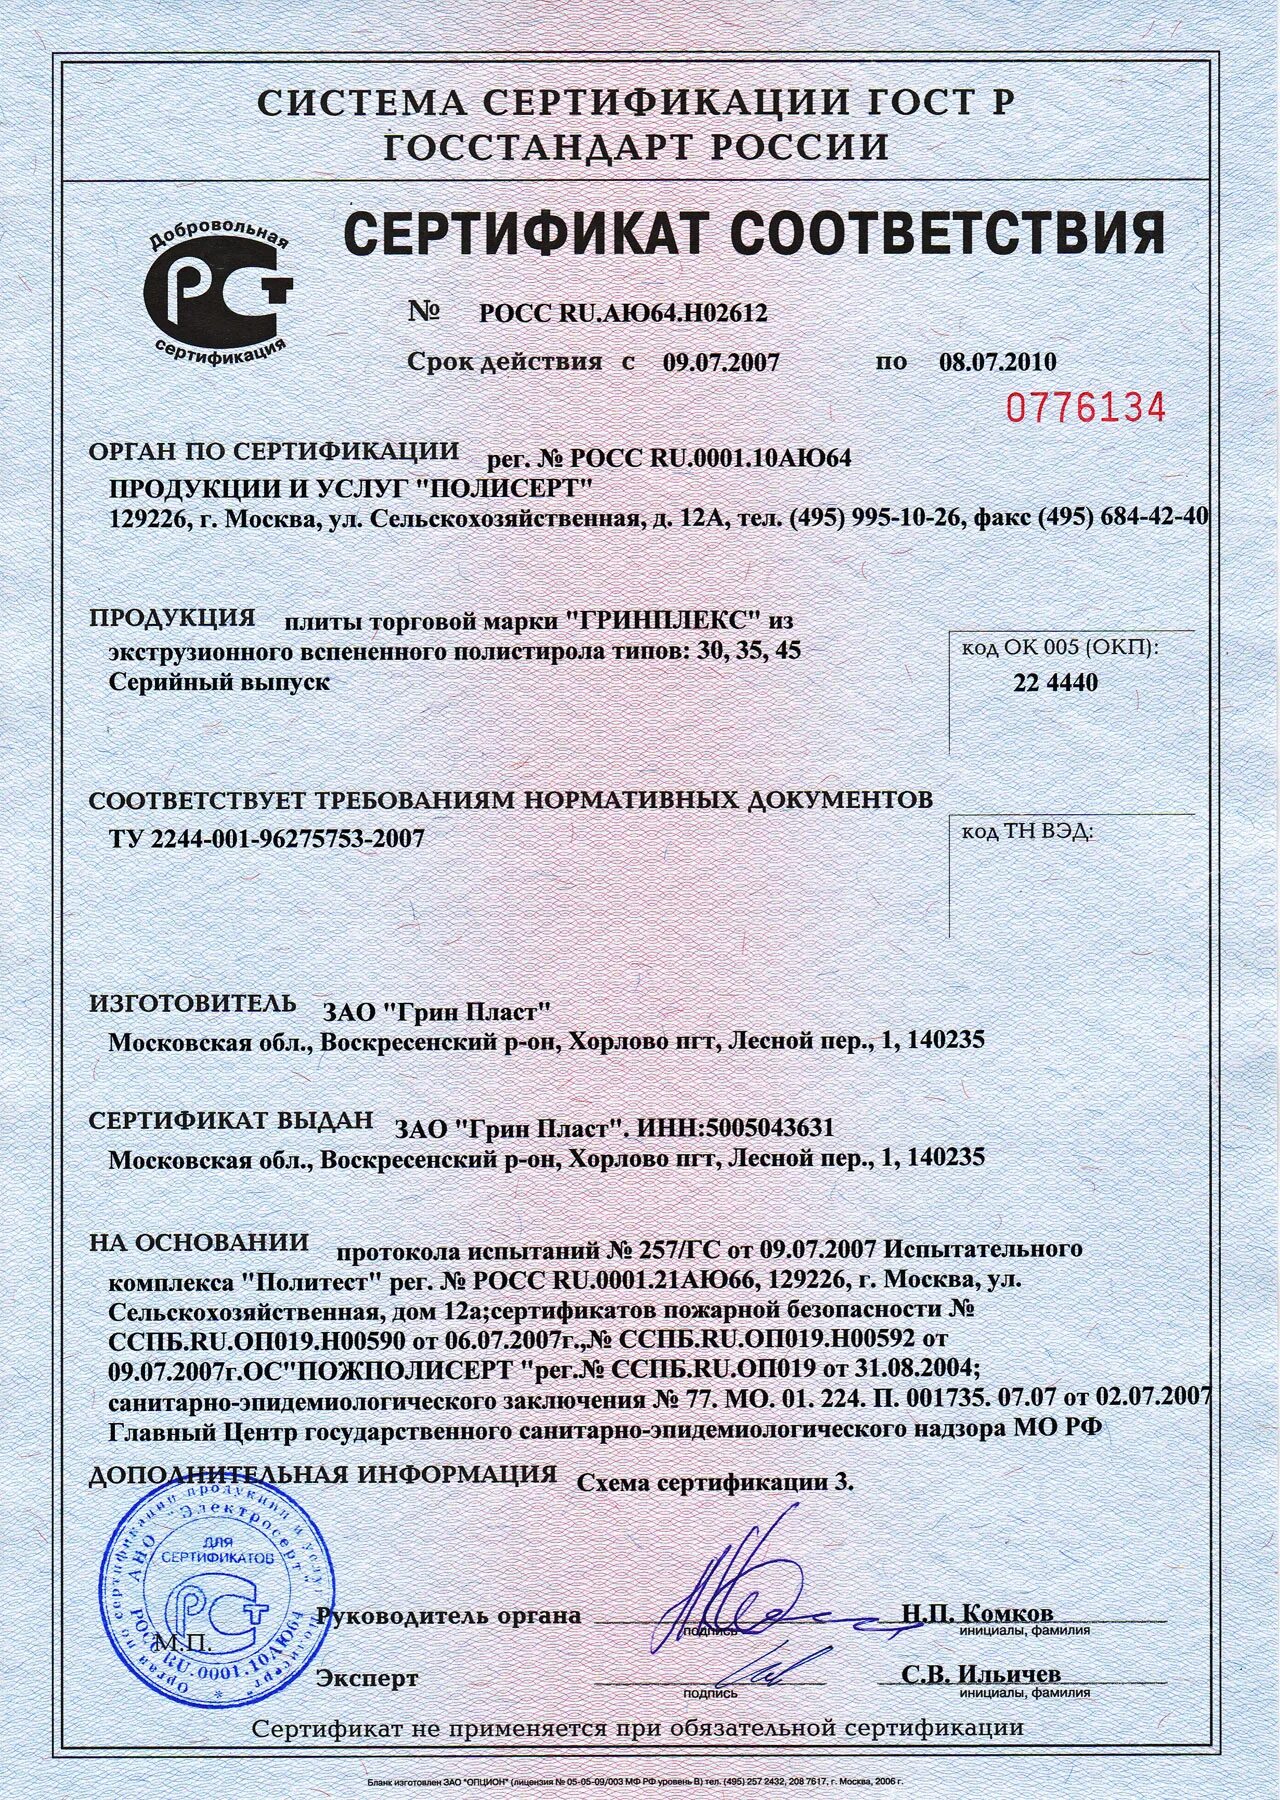 Сертификат соответствия №Росс.ru.аю64.н08964. Сертификат соответствия № Росс ru. Аю64.н07016. Сертификат соответствия на оборудование. Сертификат соответствия ГОСТ.